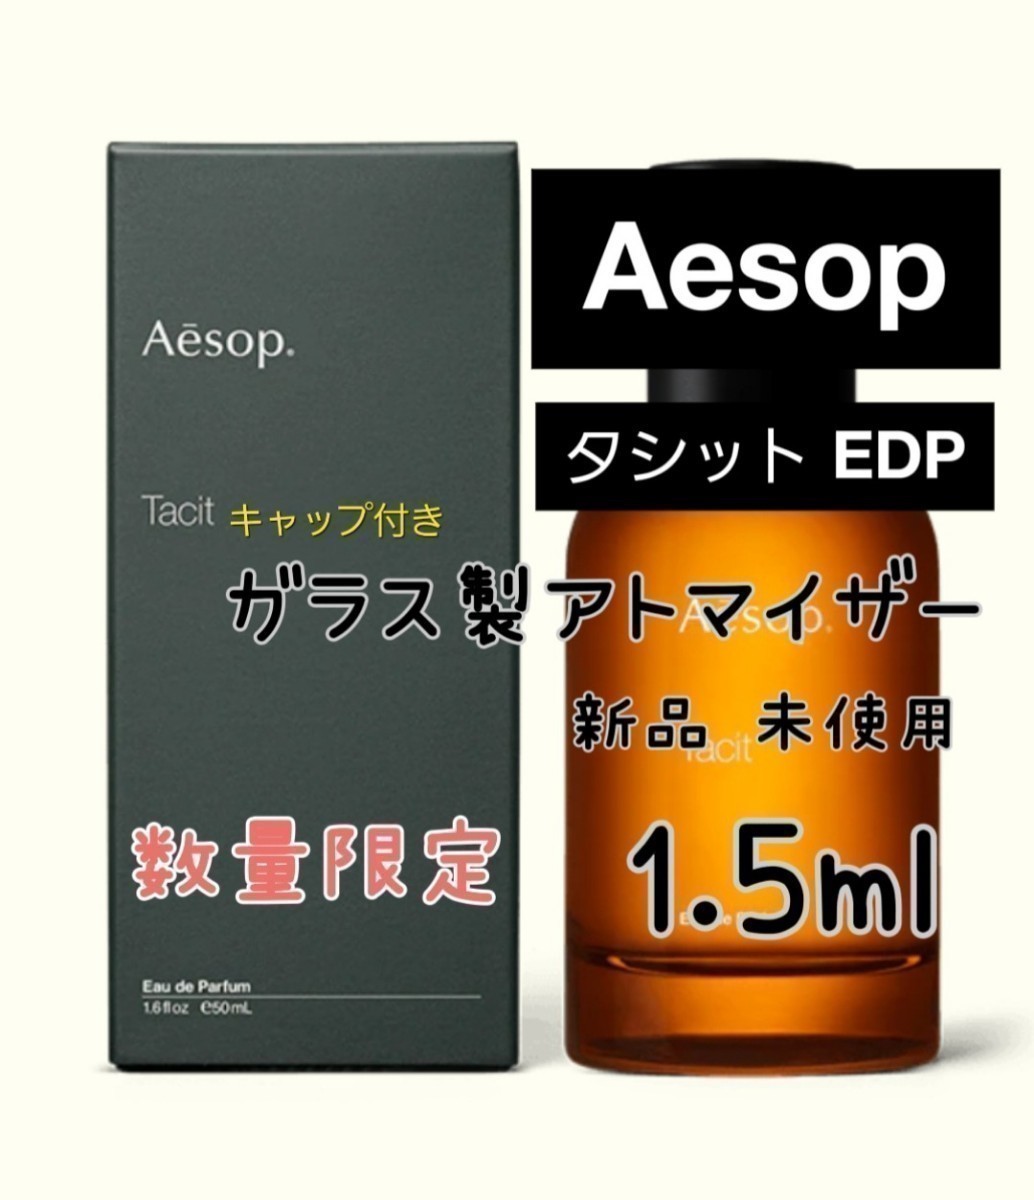 Aesop イソップ タシット オードパルファム 香水 ガラス製アトマイザー